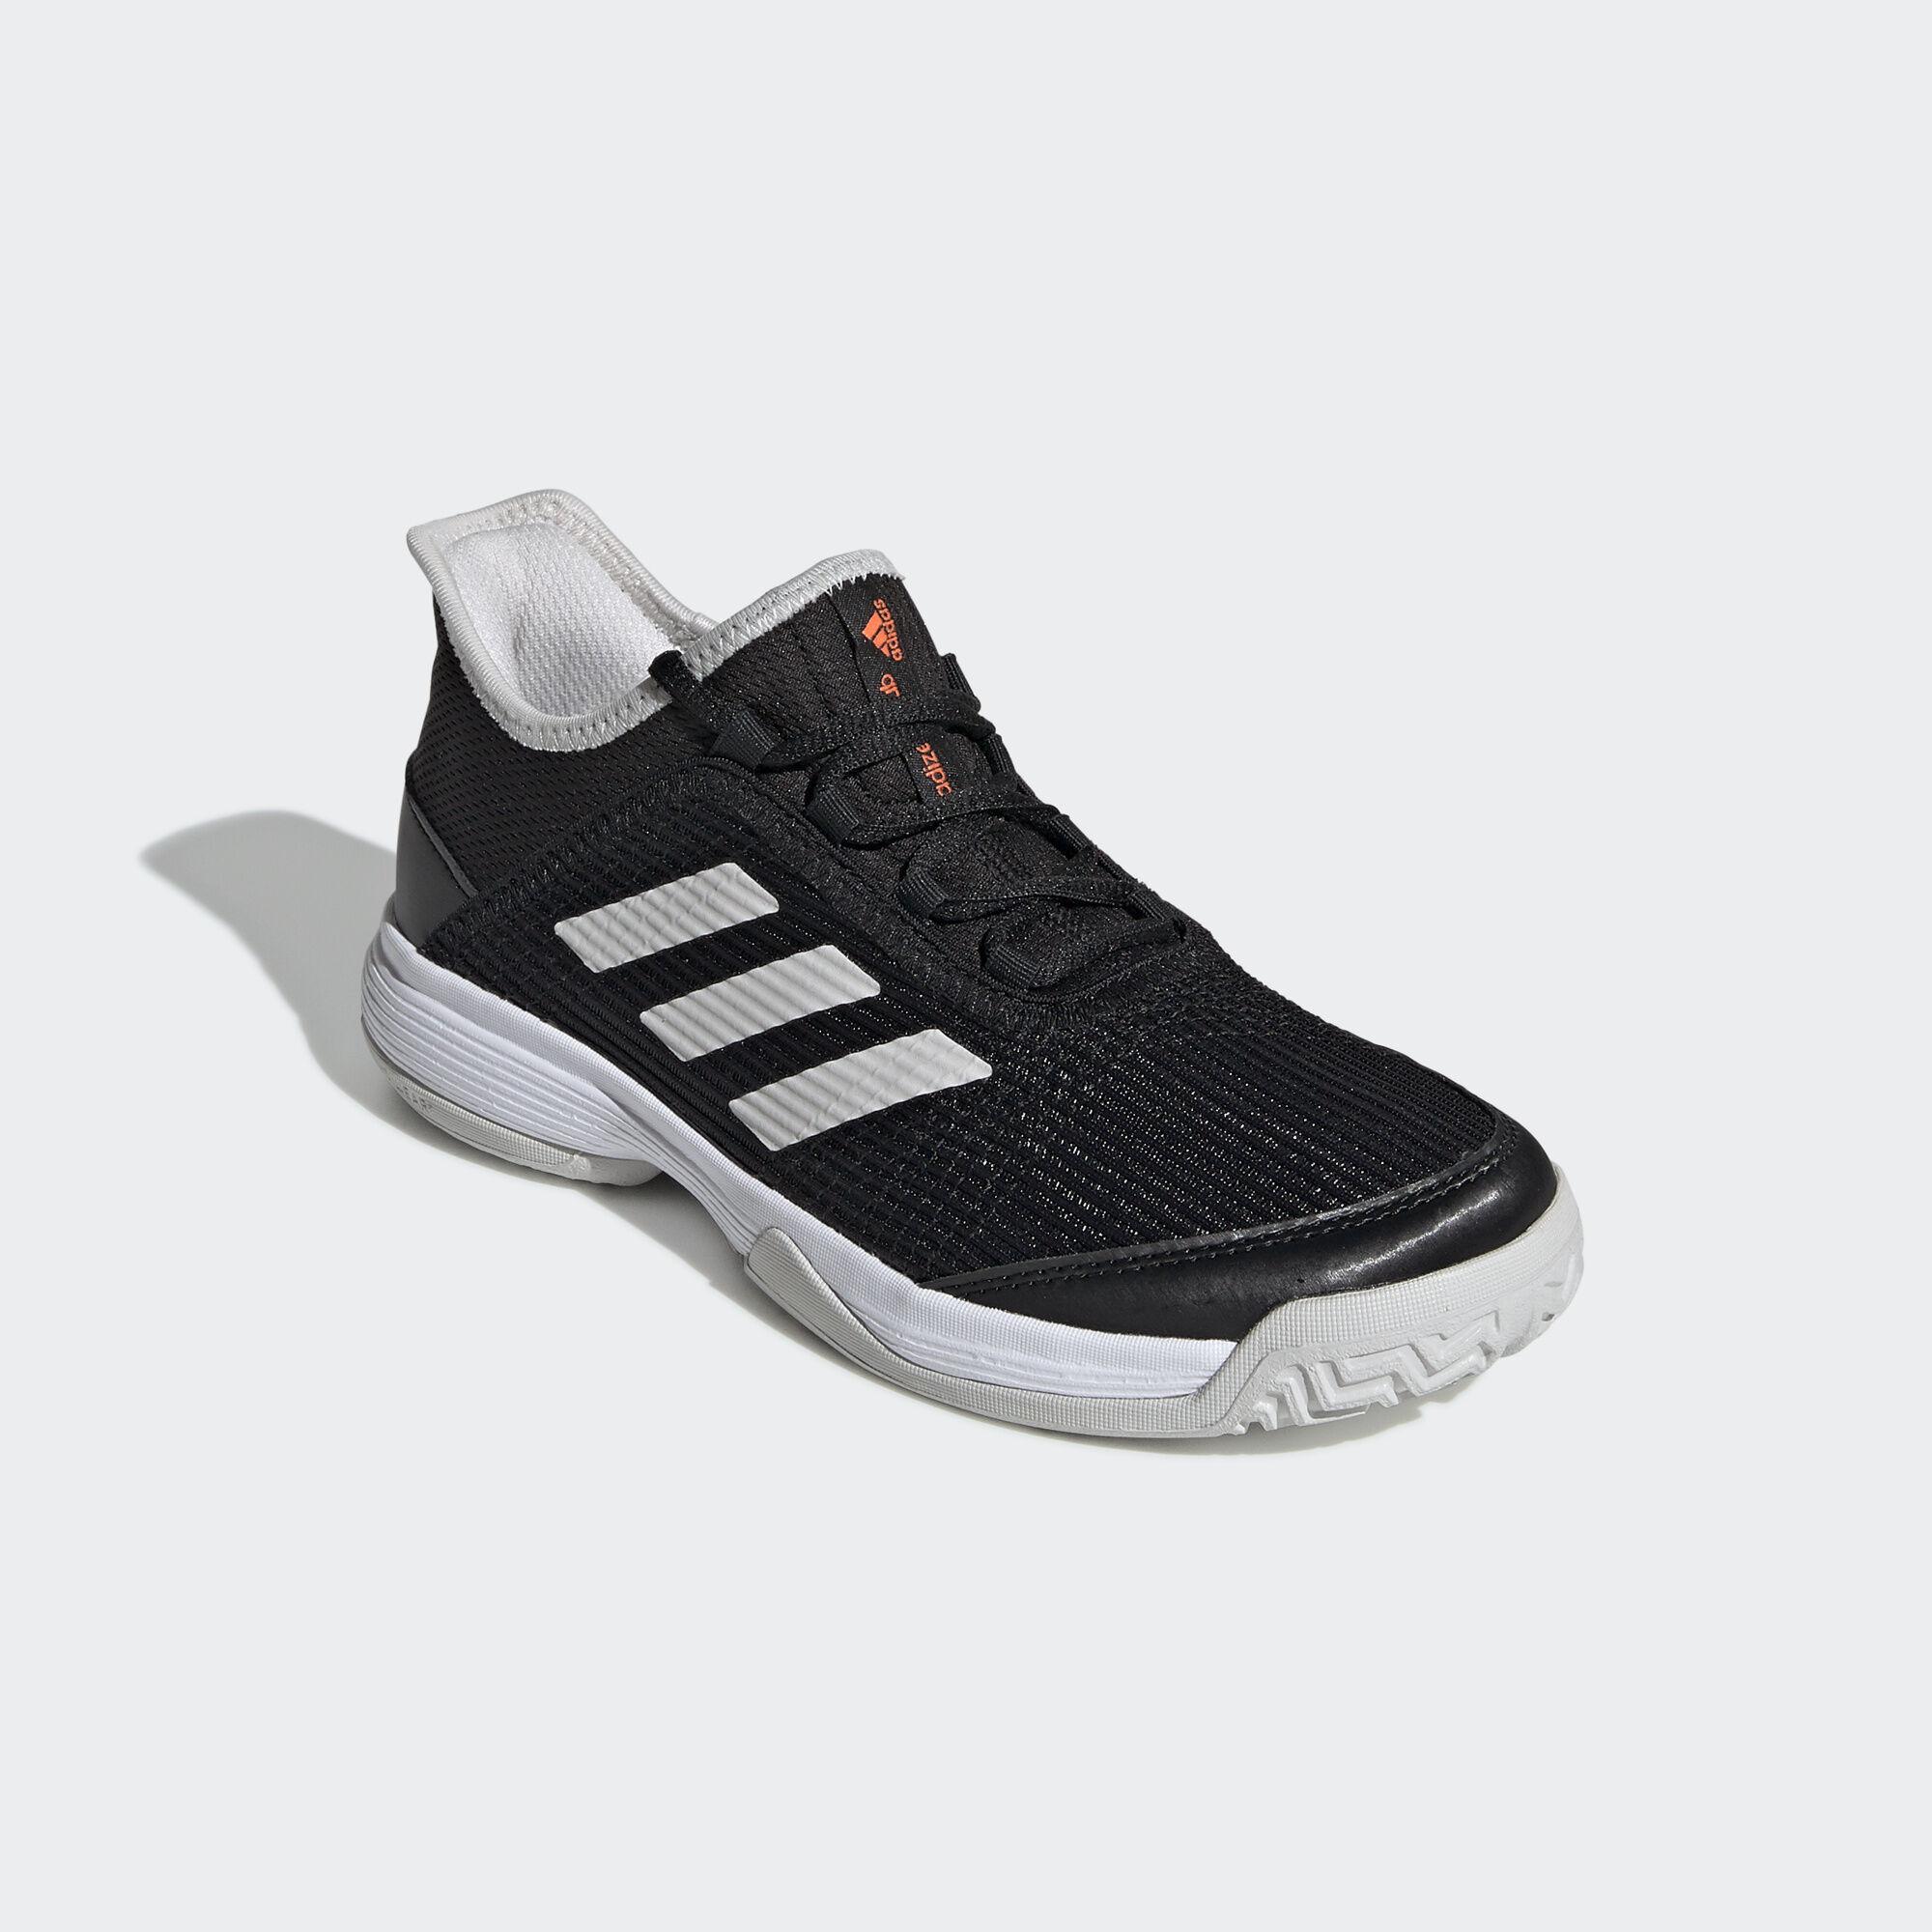 Adidas Kids Adizero Club Tennis Shoes - Black/White - Tennisnuts.com